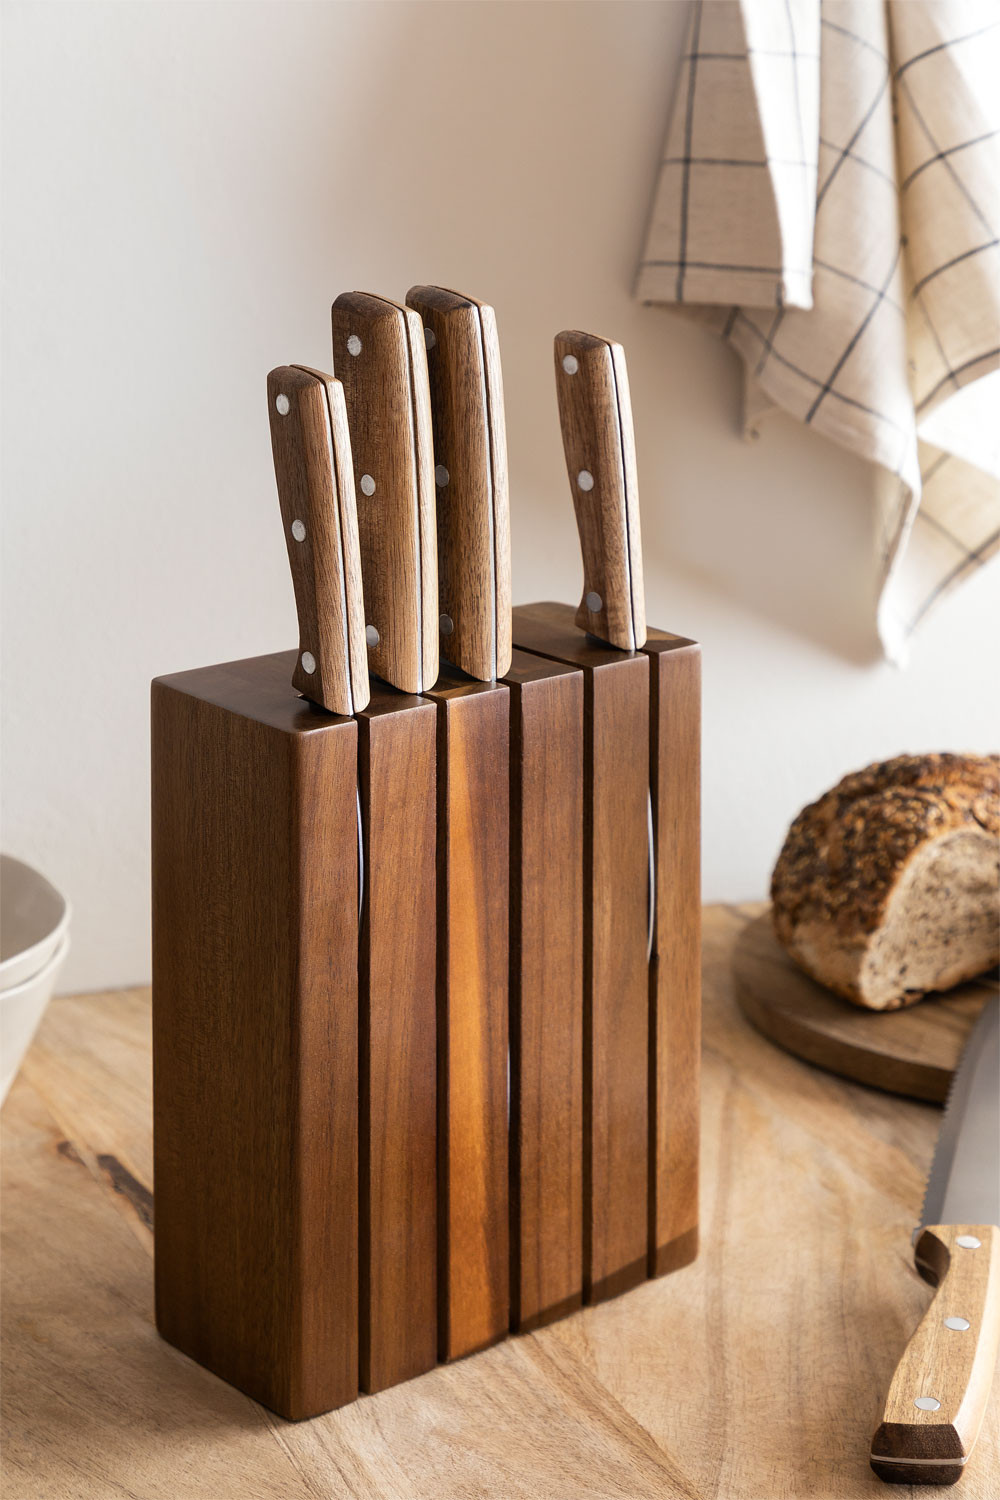 https://cdn.sklum.com/ie/1607723/set-of-kitchen-knives-with-wooden-block-espe.jpg